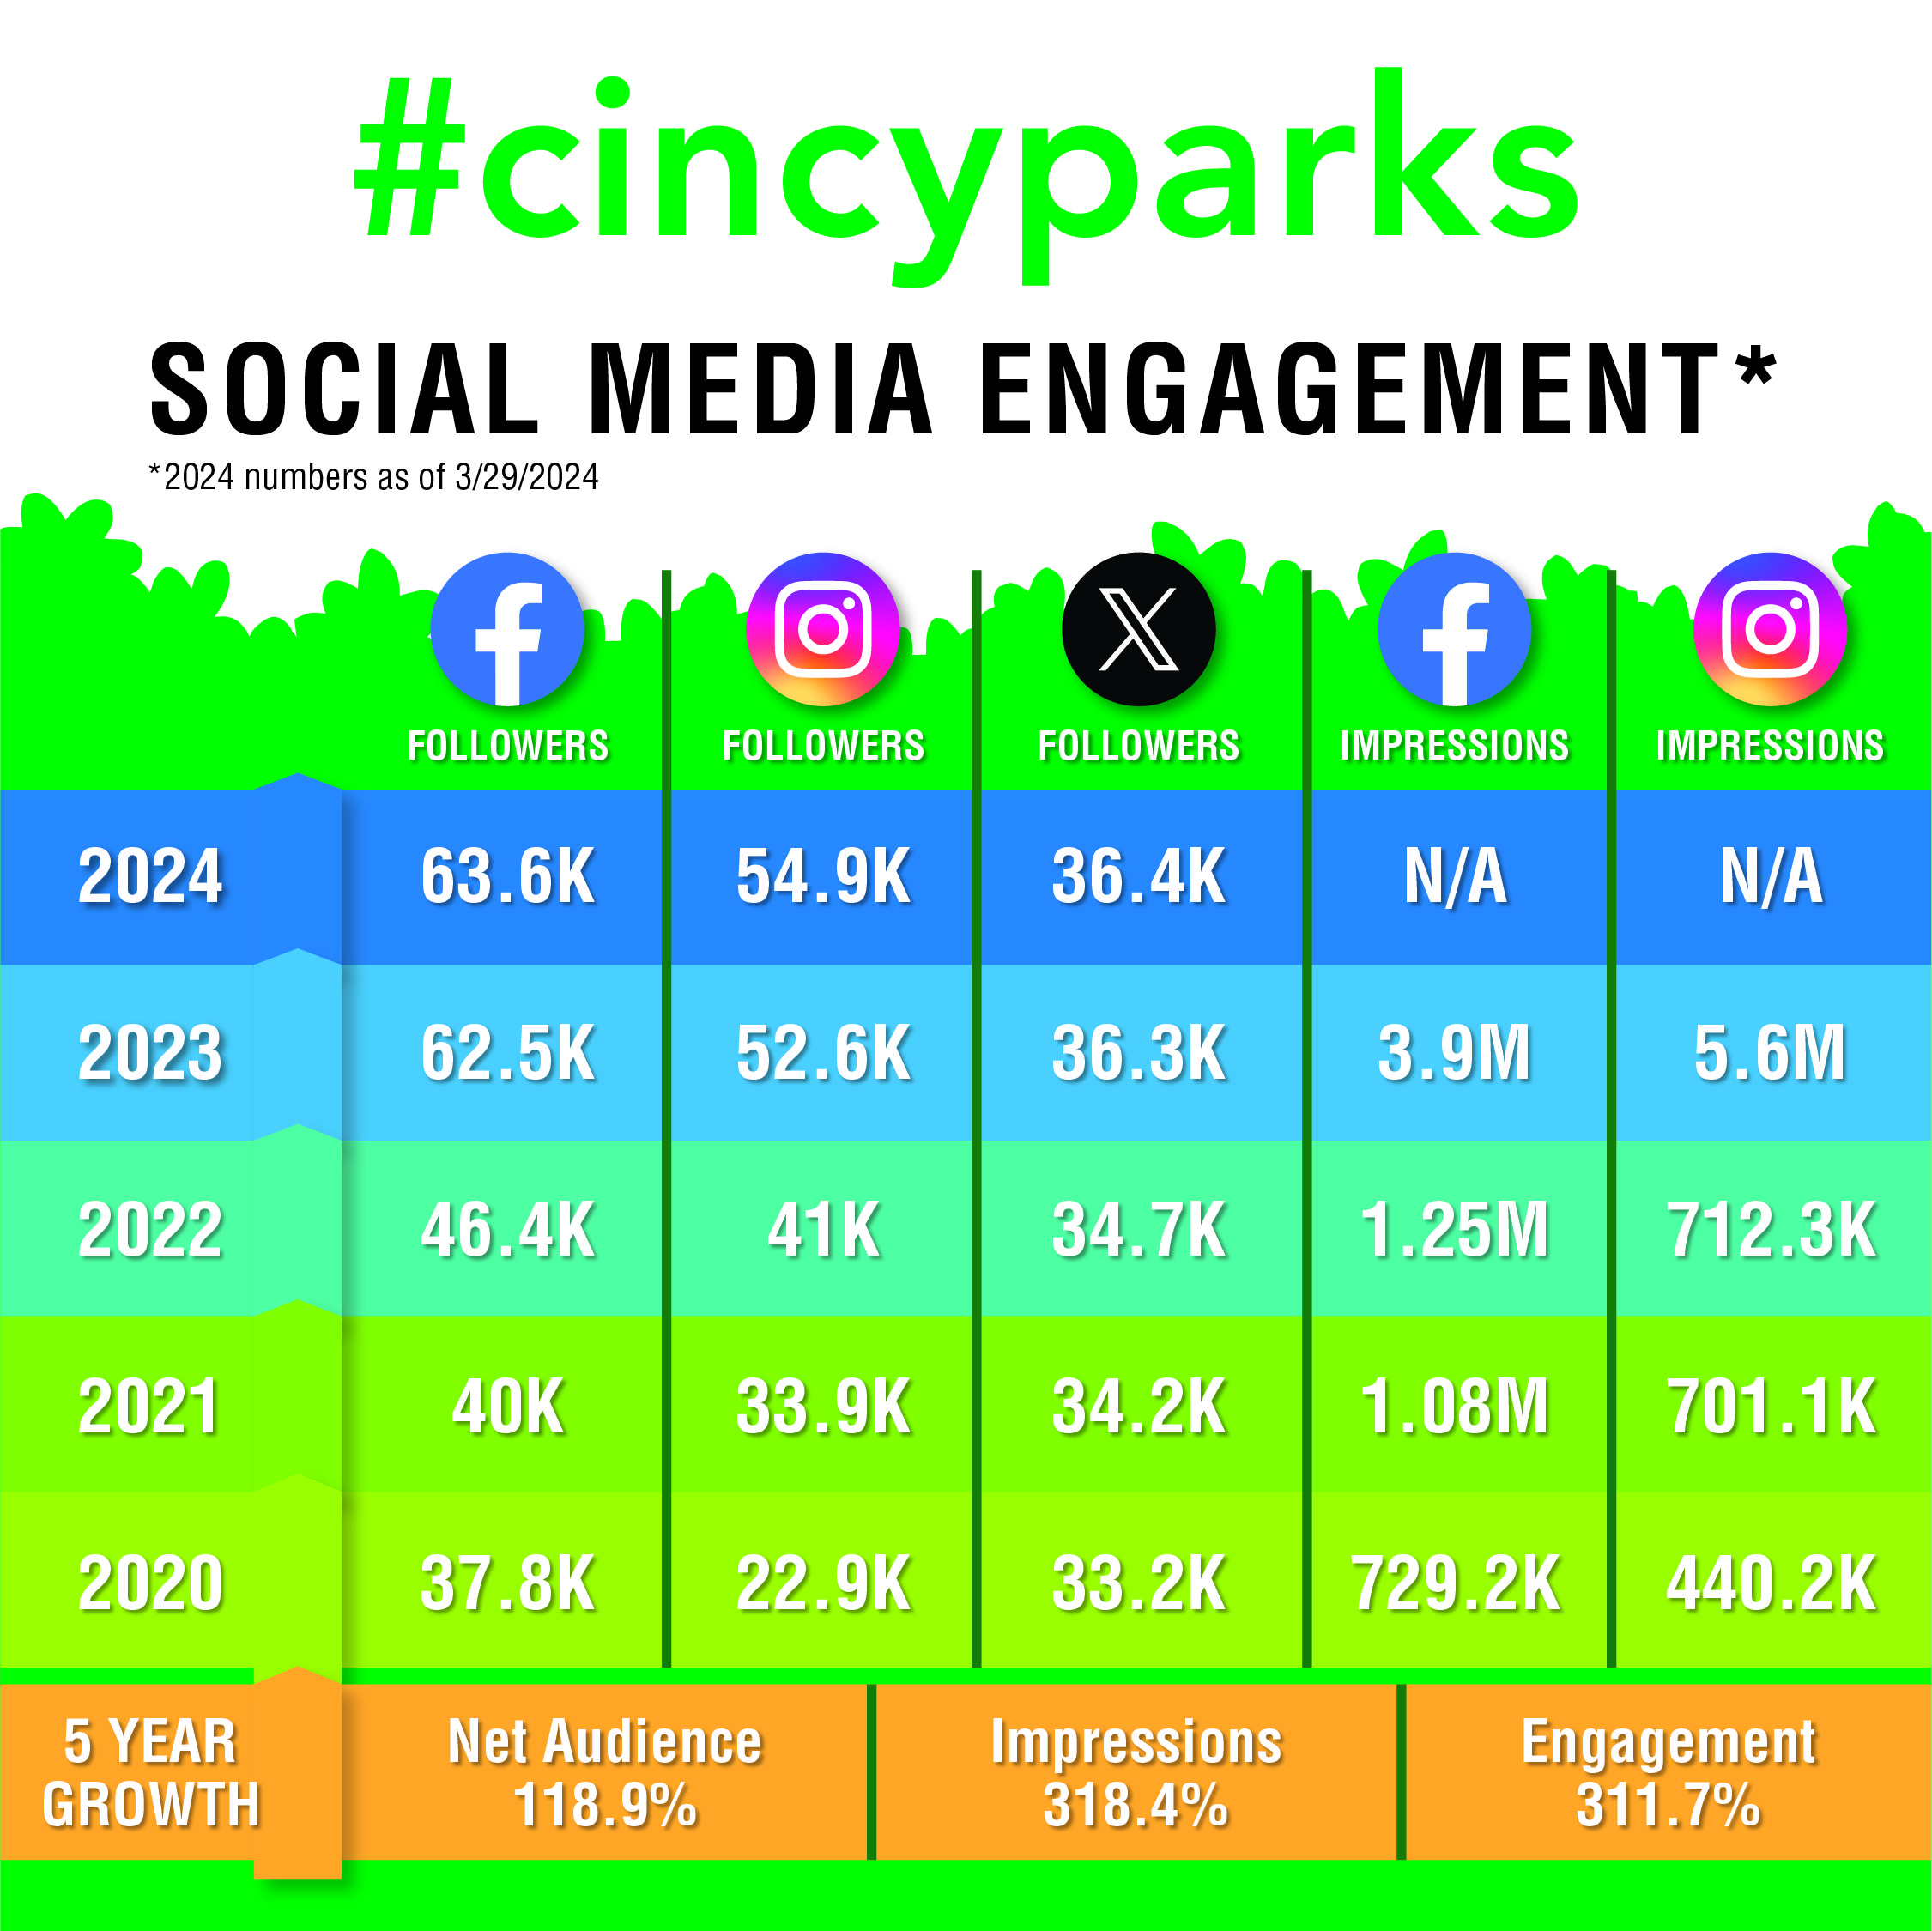 Cincinnati Parks social media growth from 2020-2024